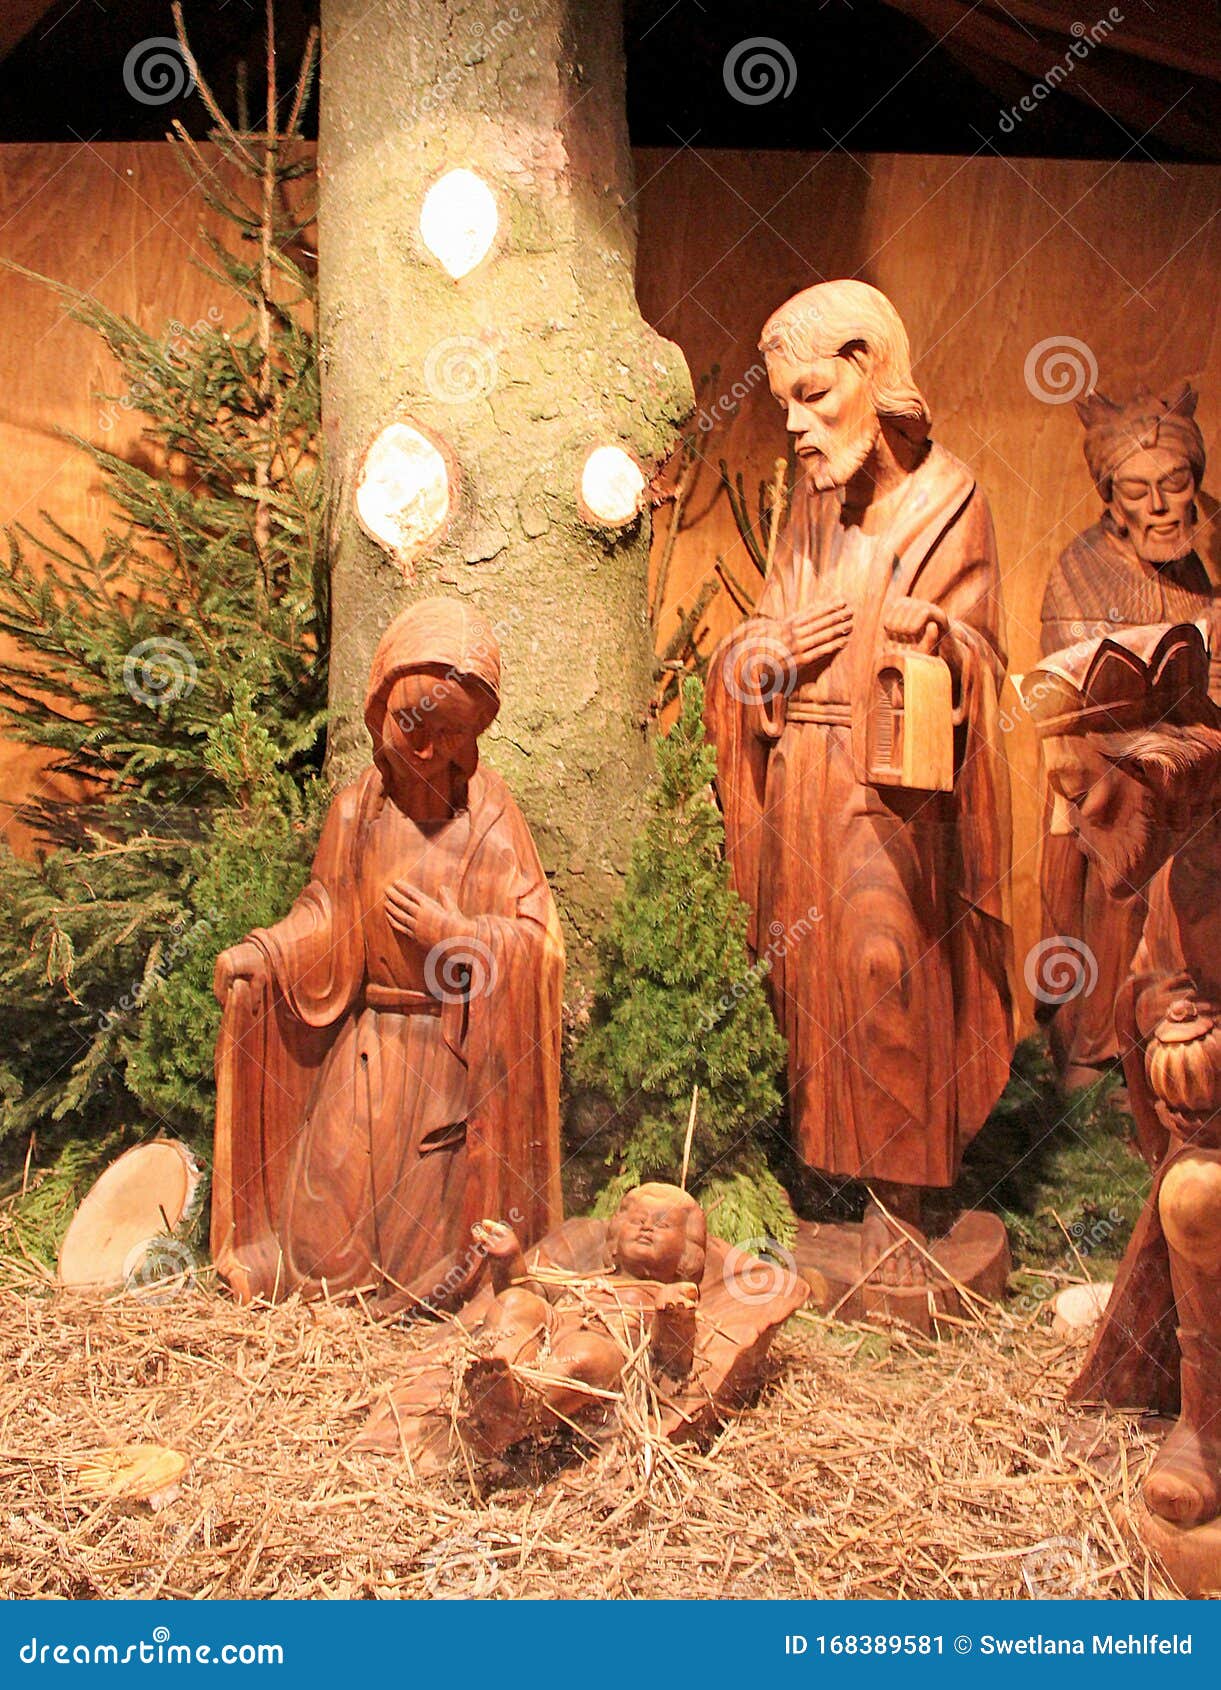 Decoración De Resina De La Sagrada Familia En El Pesebre Figura Esculpida En Miniatura De La Escena De La Natividad De La Sagrada Familia Navidad Adorno Navideño De La Escena De La Natividad 